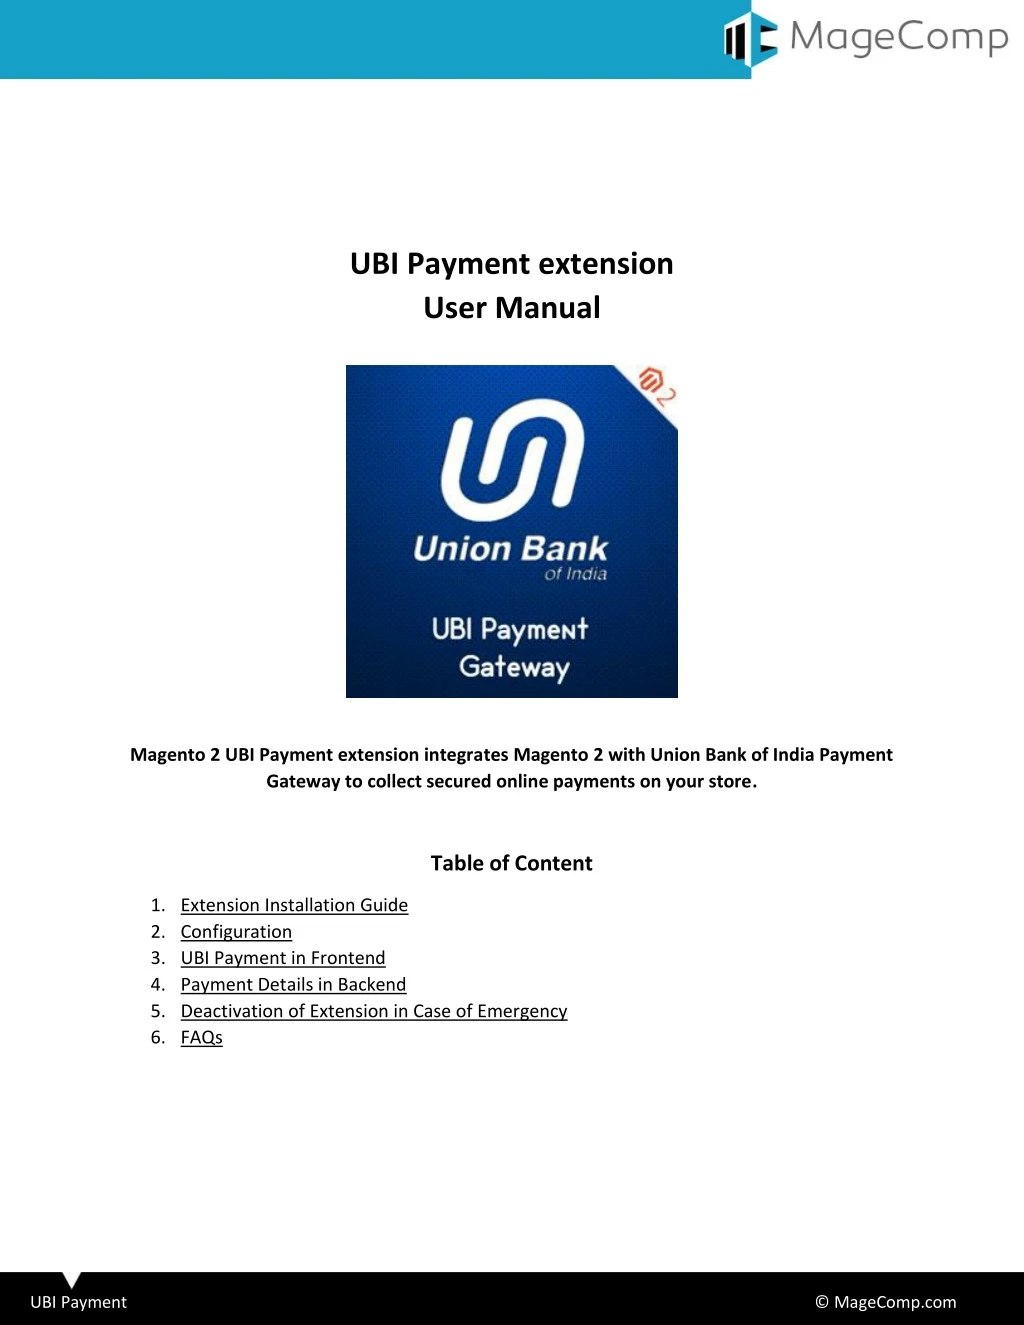 ubi payment extension user manual